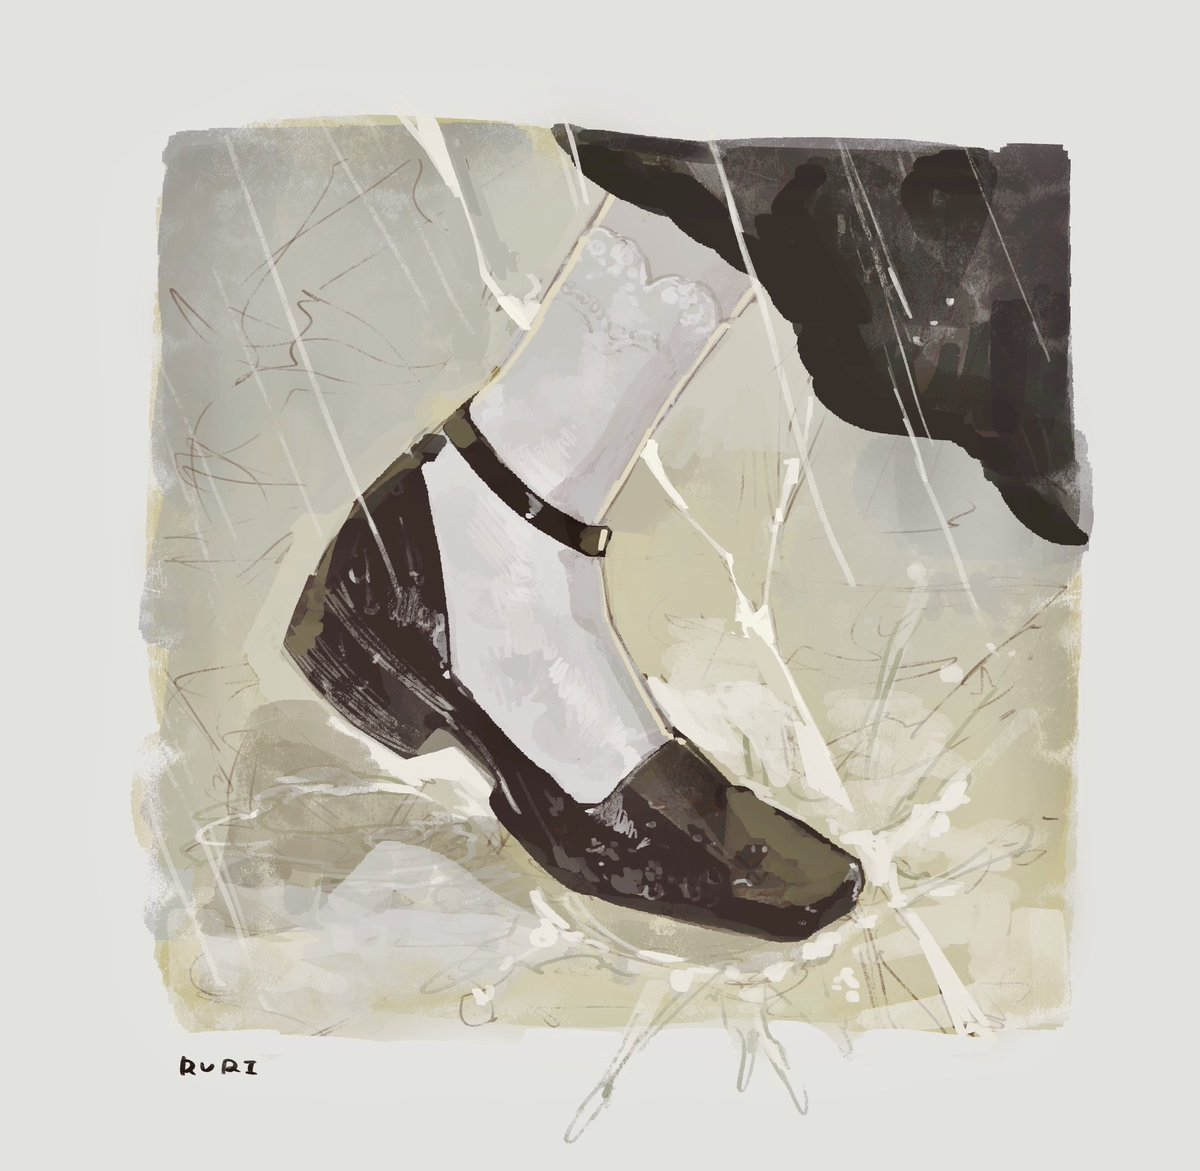 1girl solo shoes socks black footwear dated border  illustration images